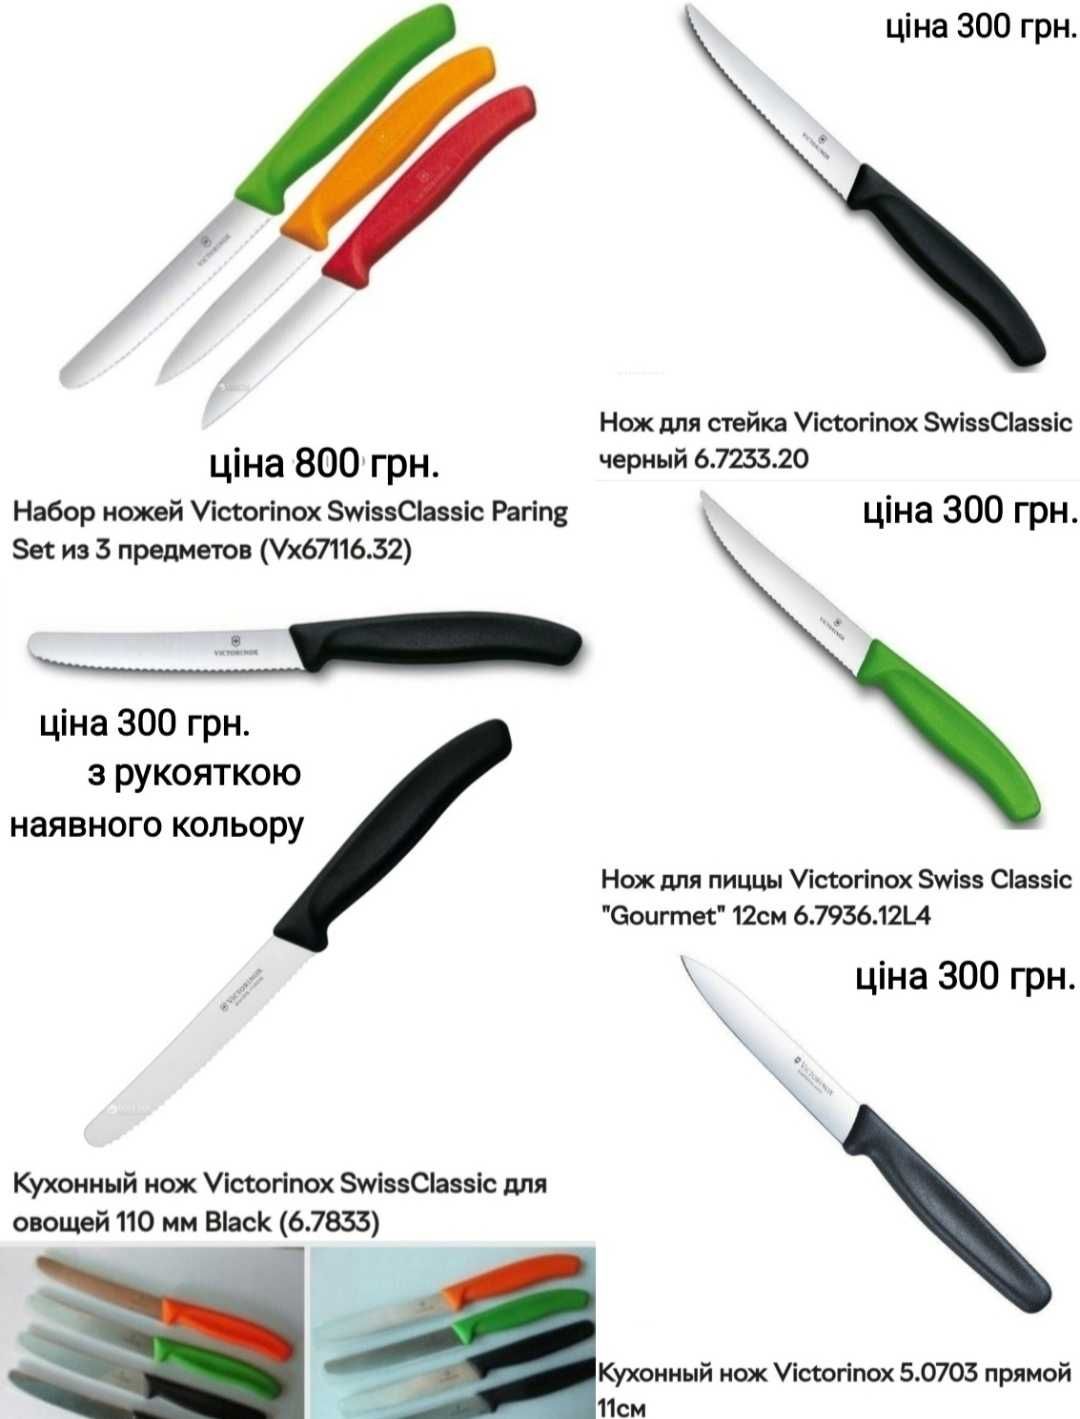 Victorinox - карманные, кухонные ножи, точилка, чехол. Распродаж,торг.